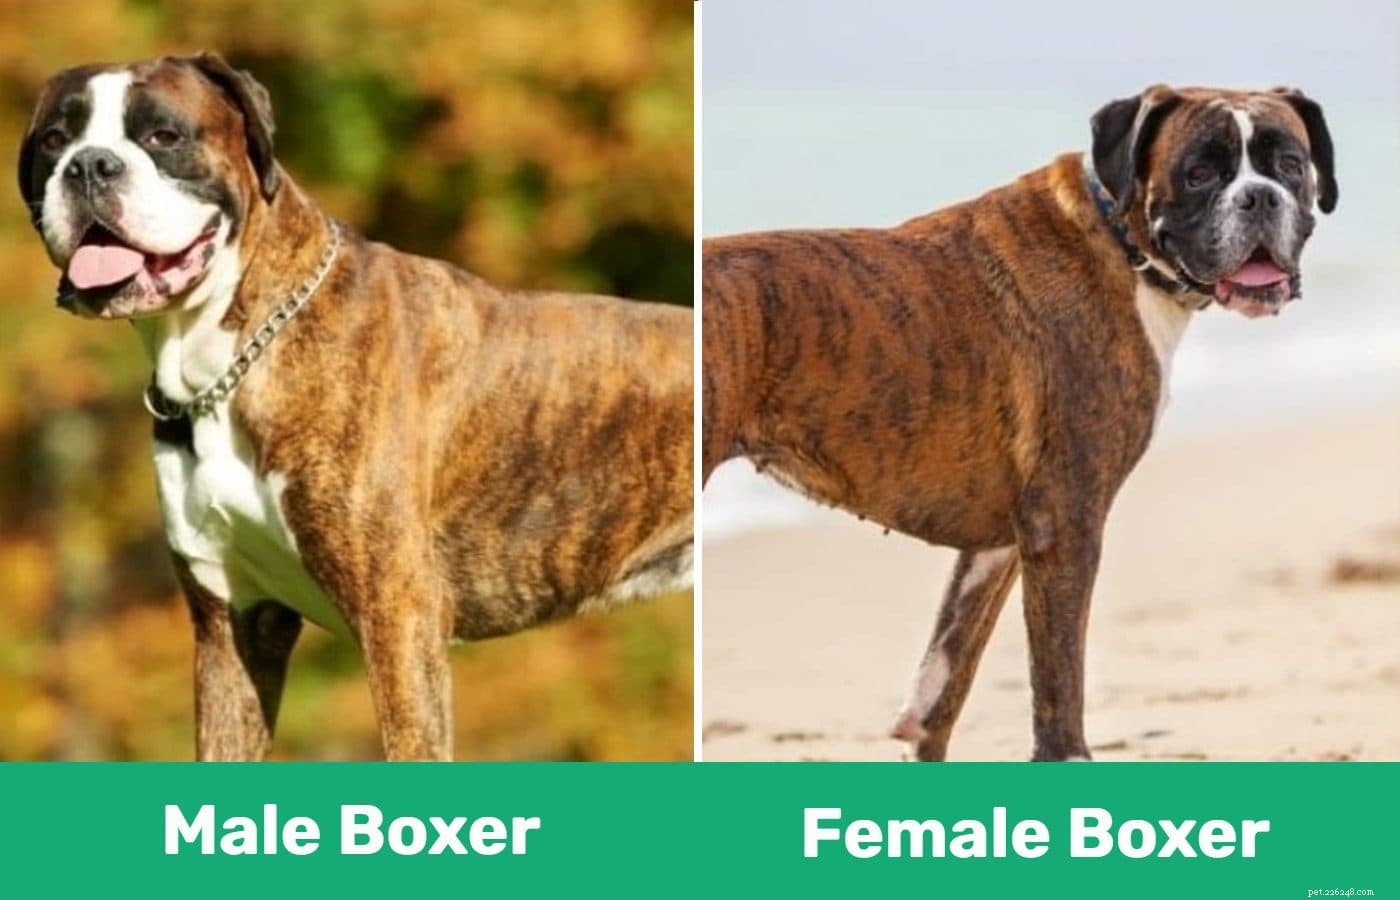 Man versus vrouwelijke bokserhond:wat zijn de verschillen?